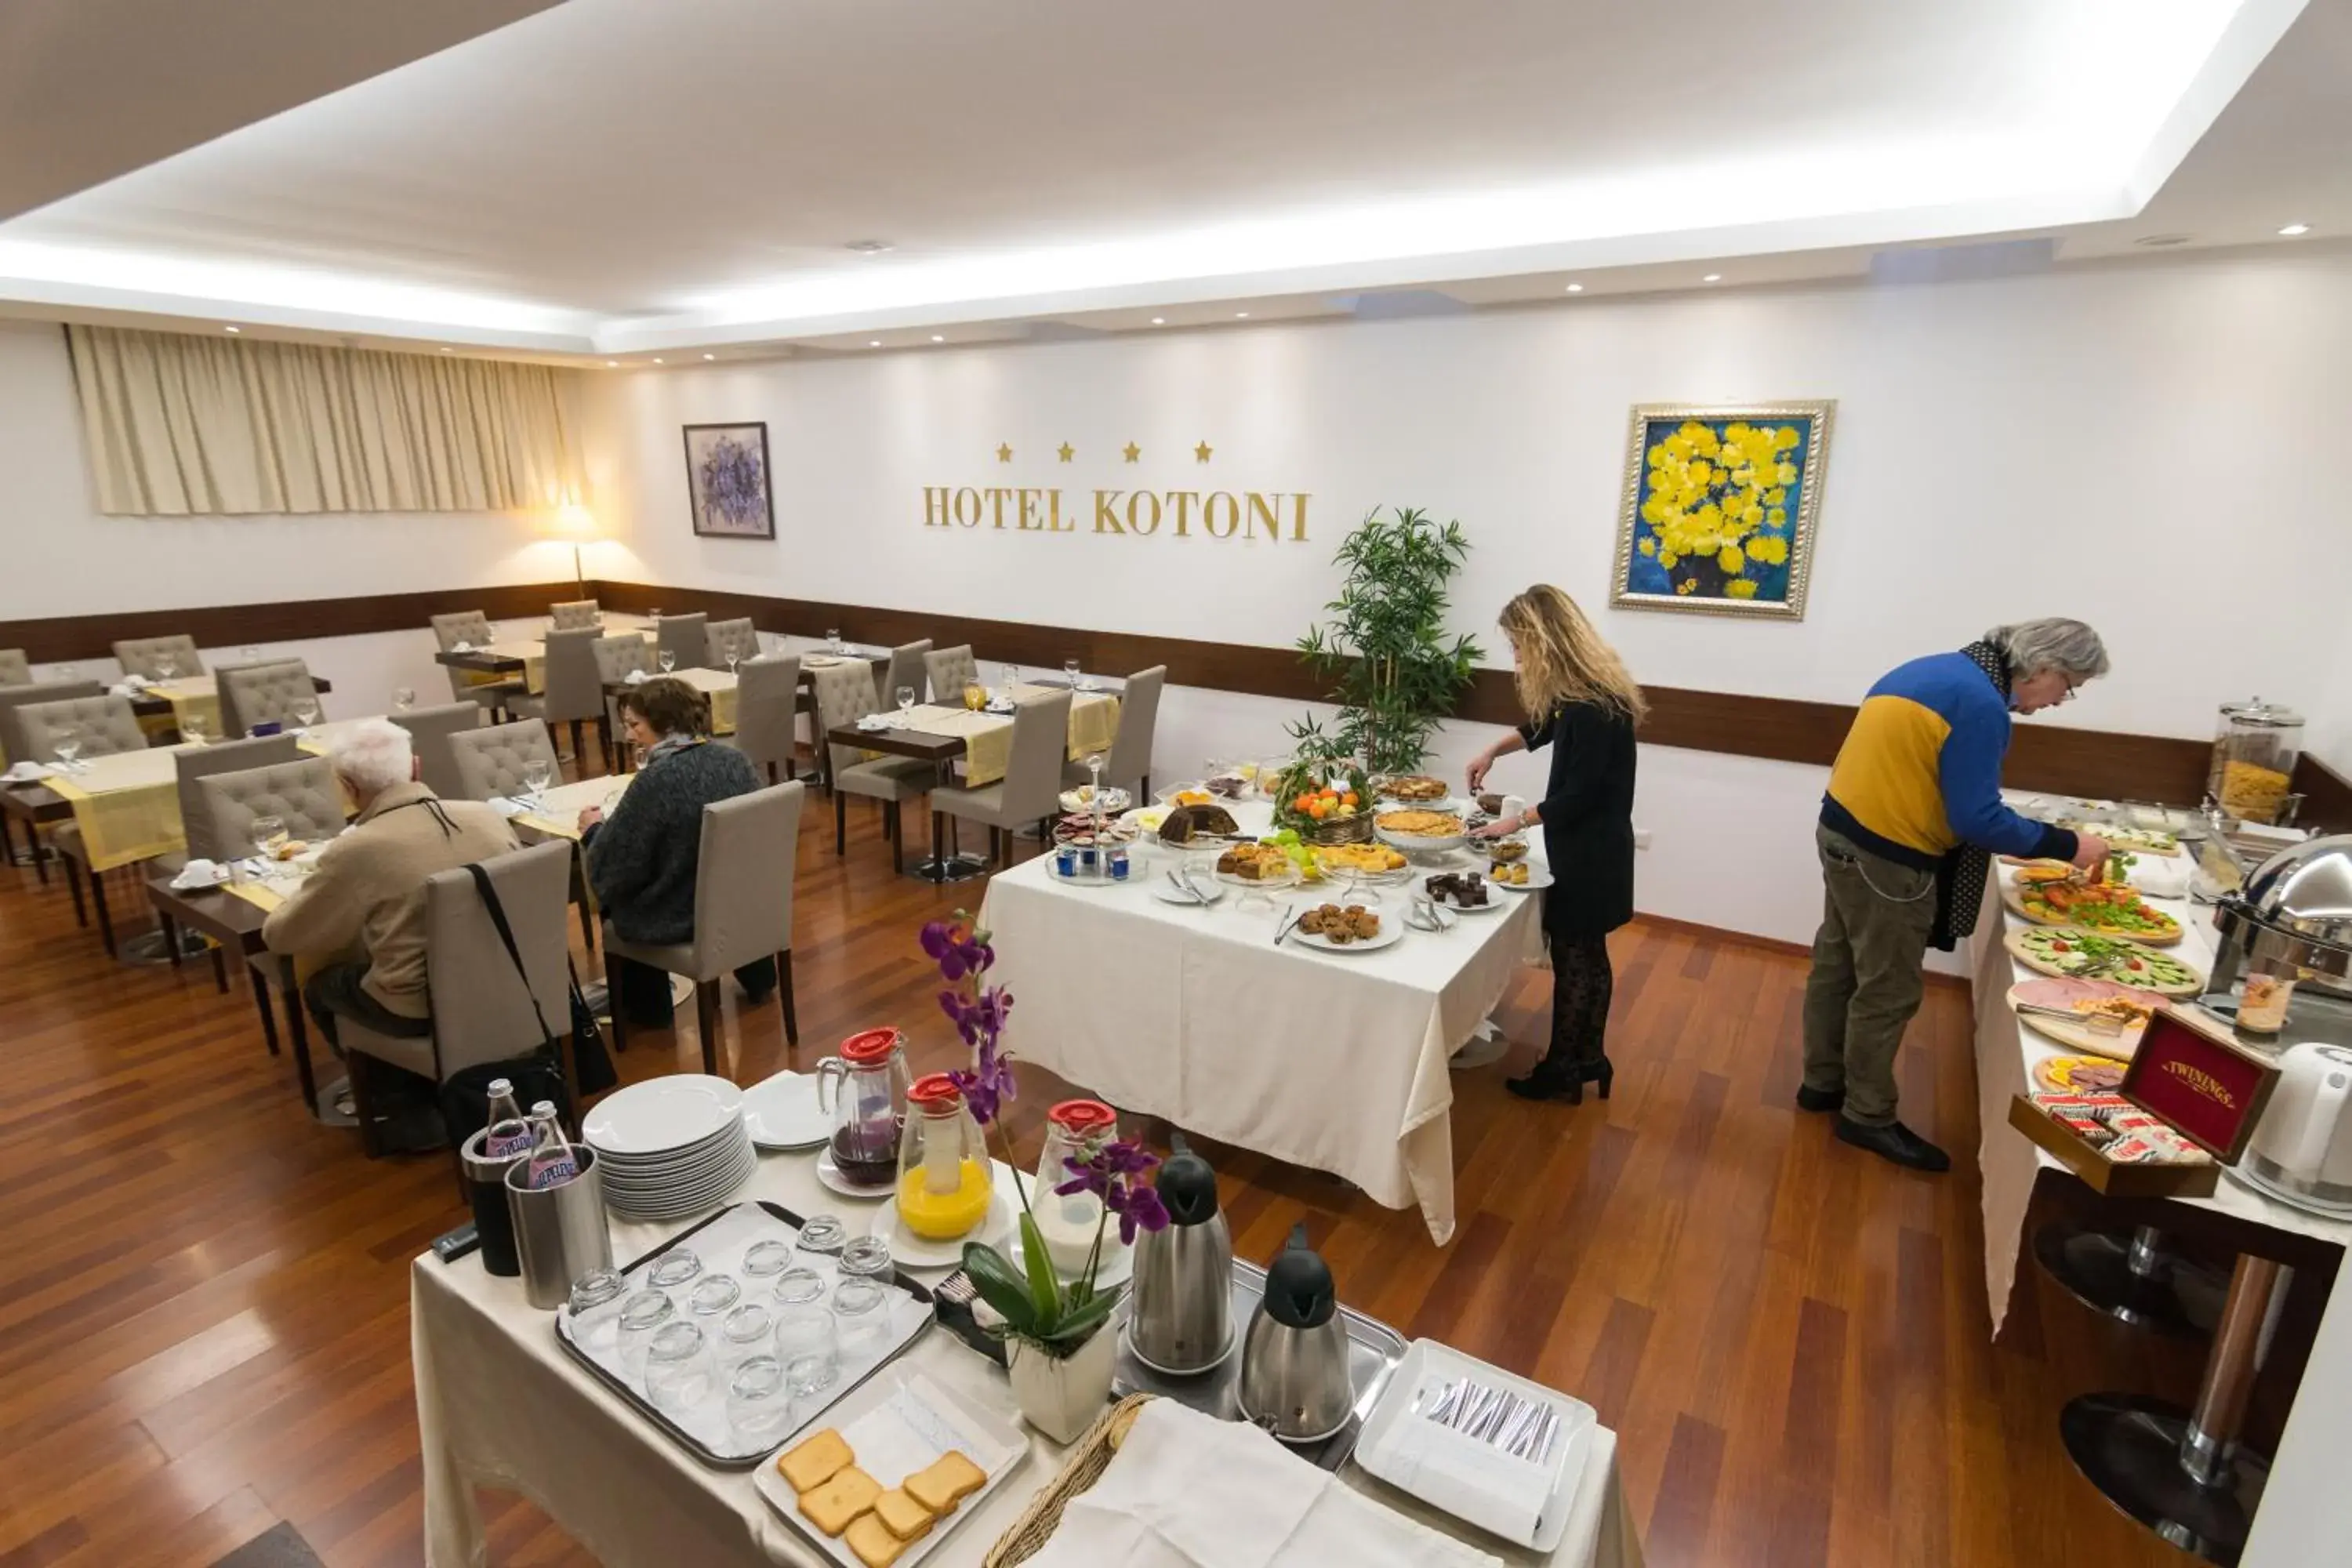 Buffet breakfast in Boutique Hotel Kotoni